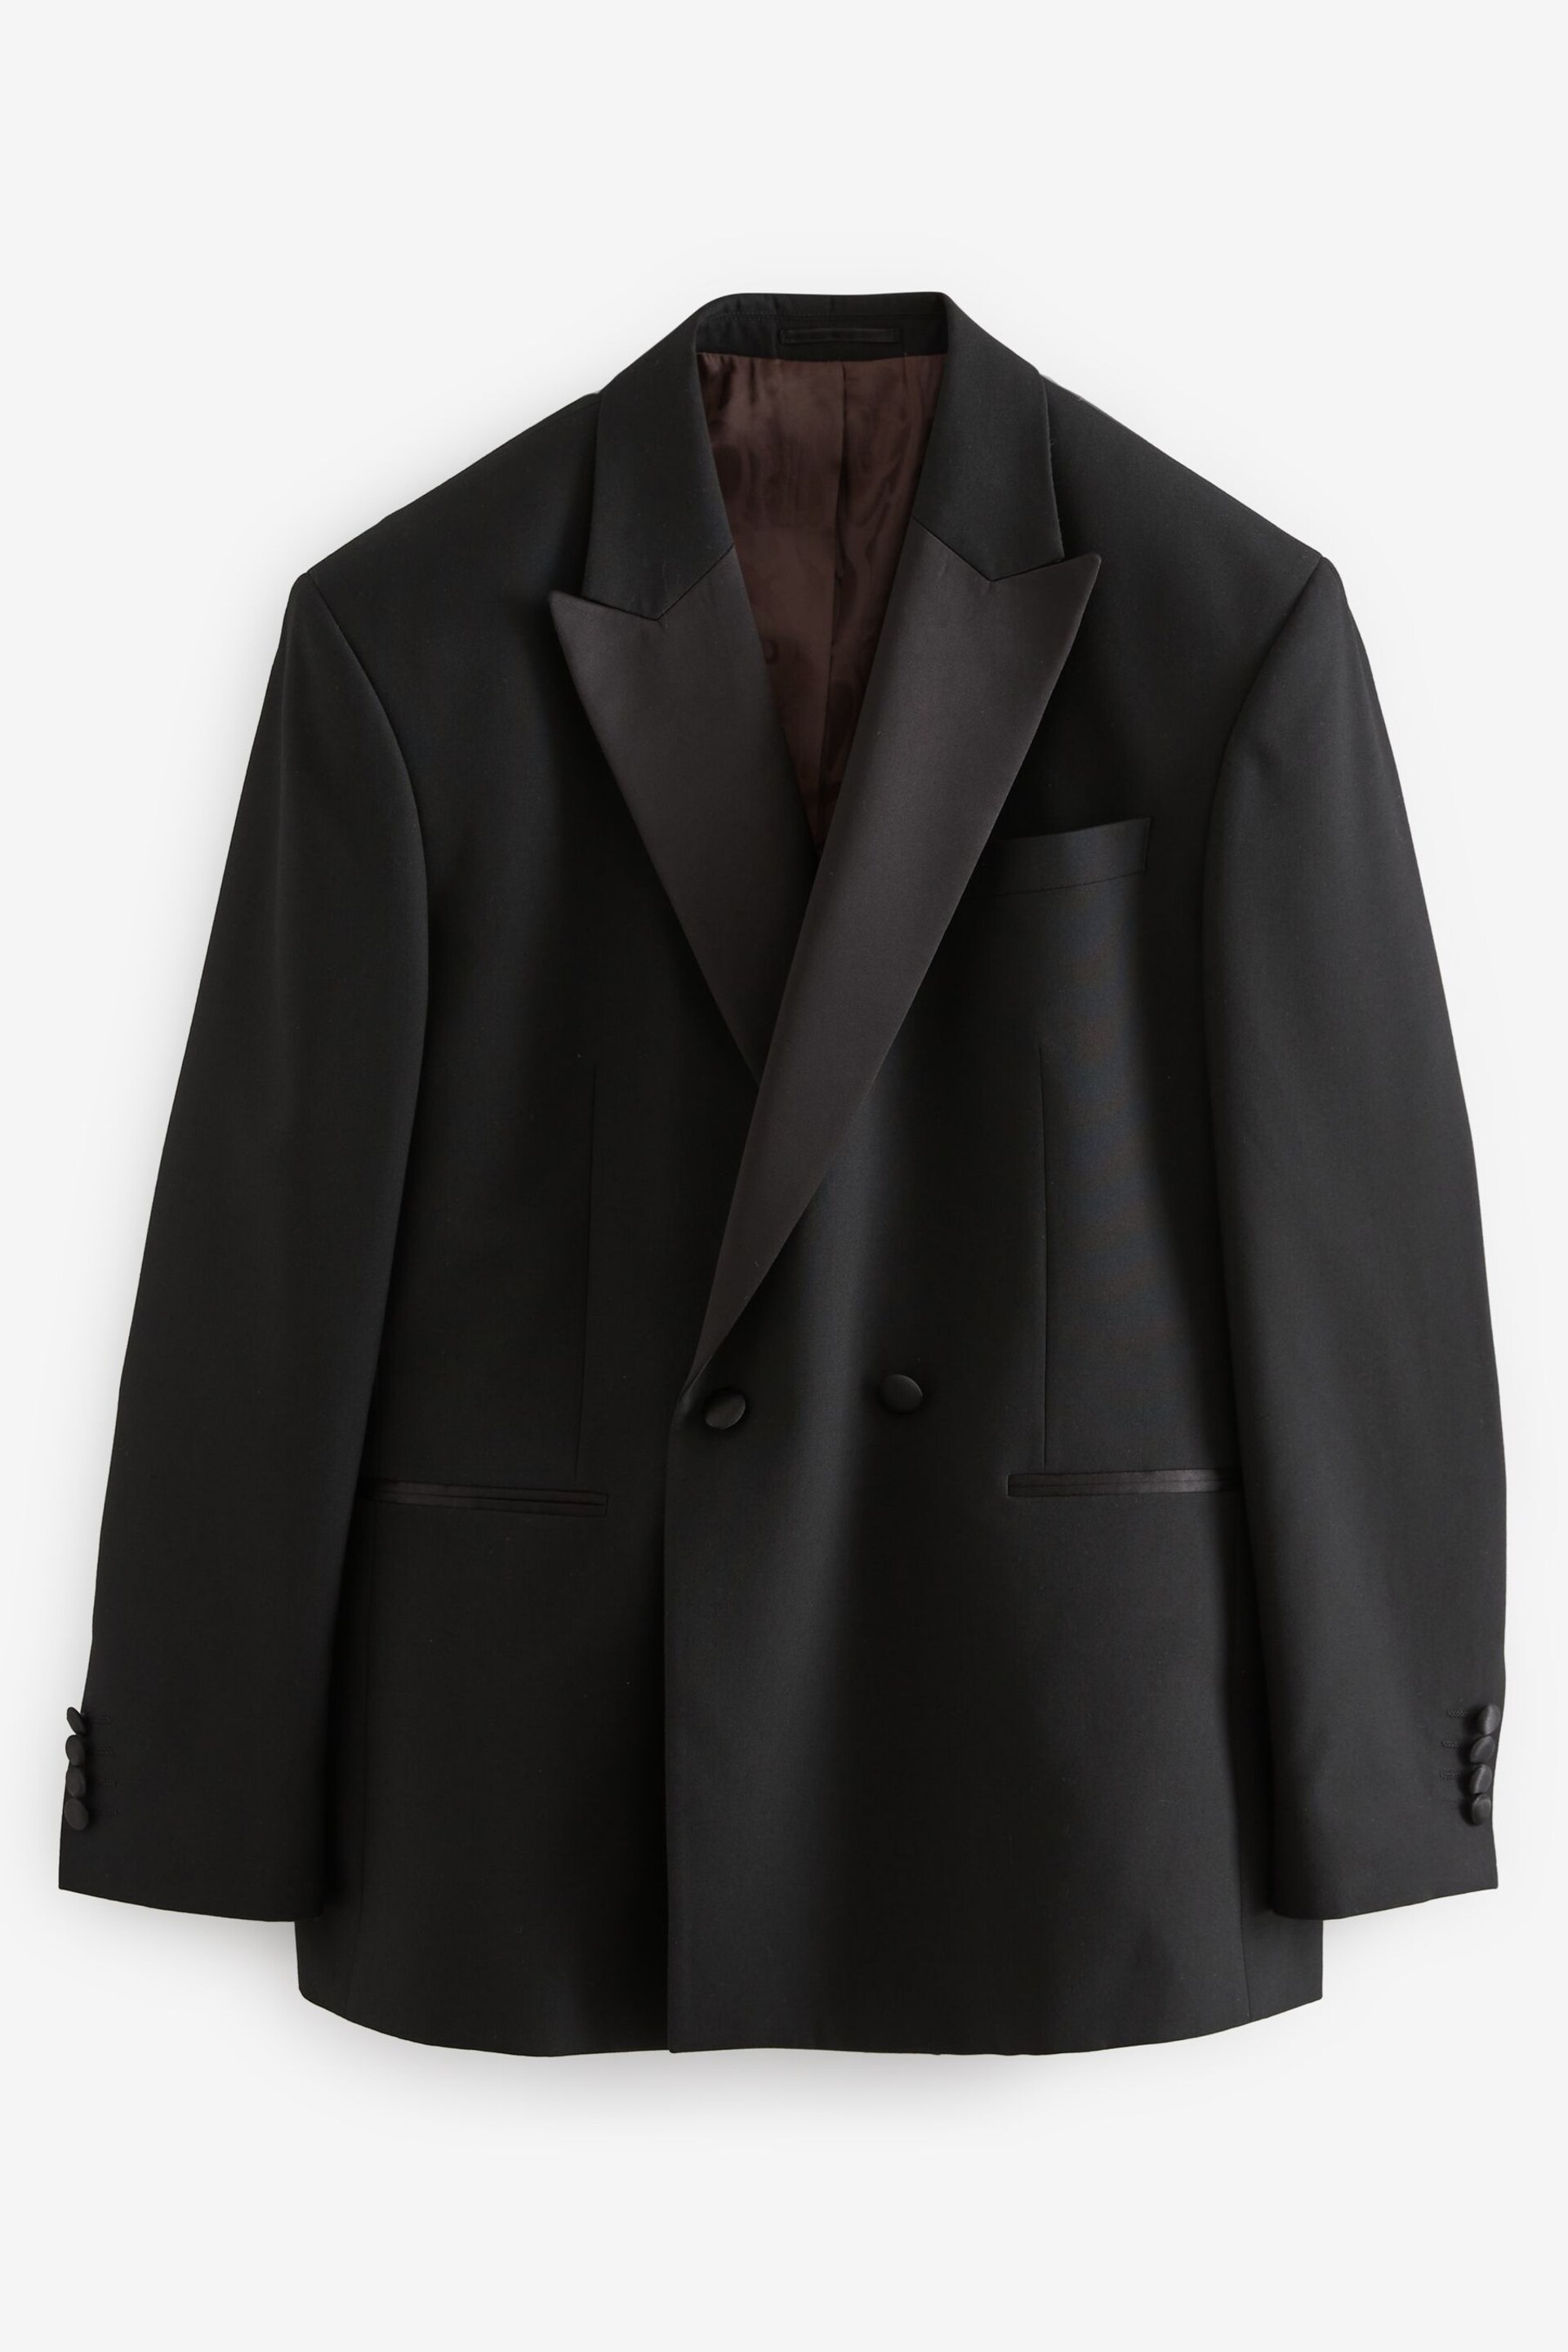 Black EDIT Oversized Suit Jacket - Image 8 of 13